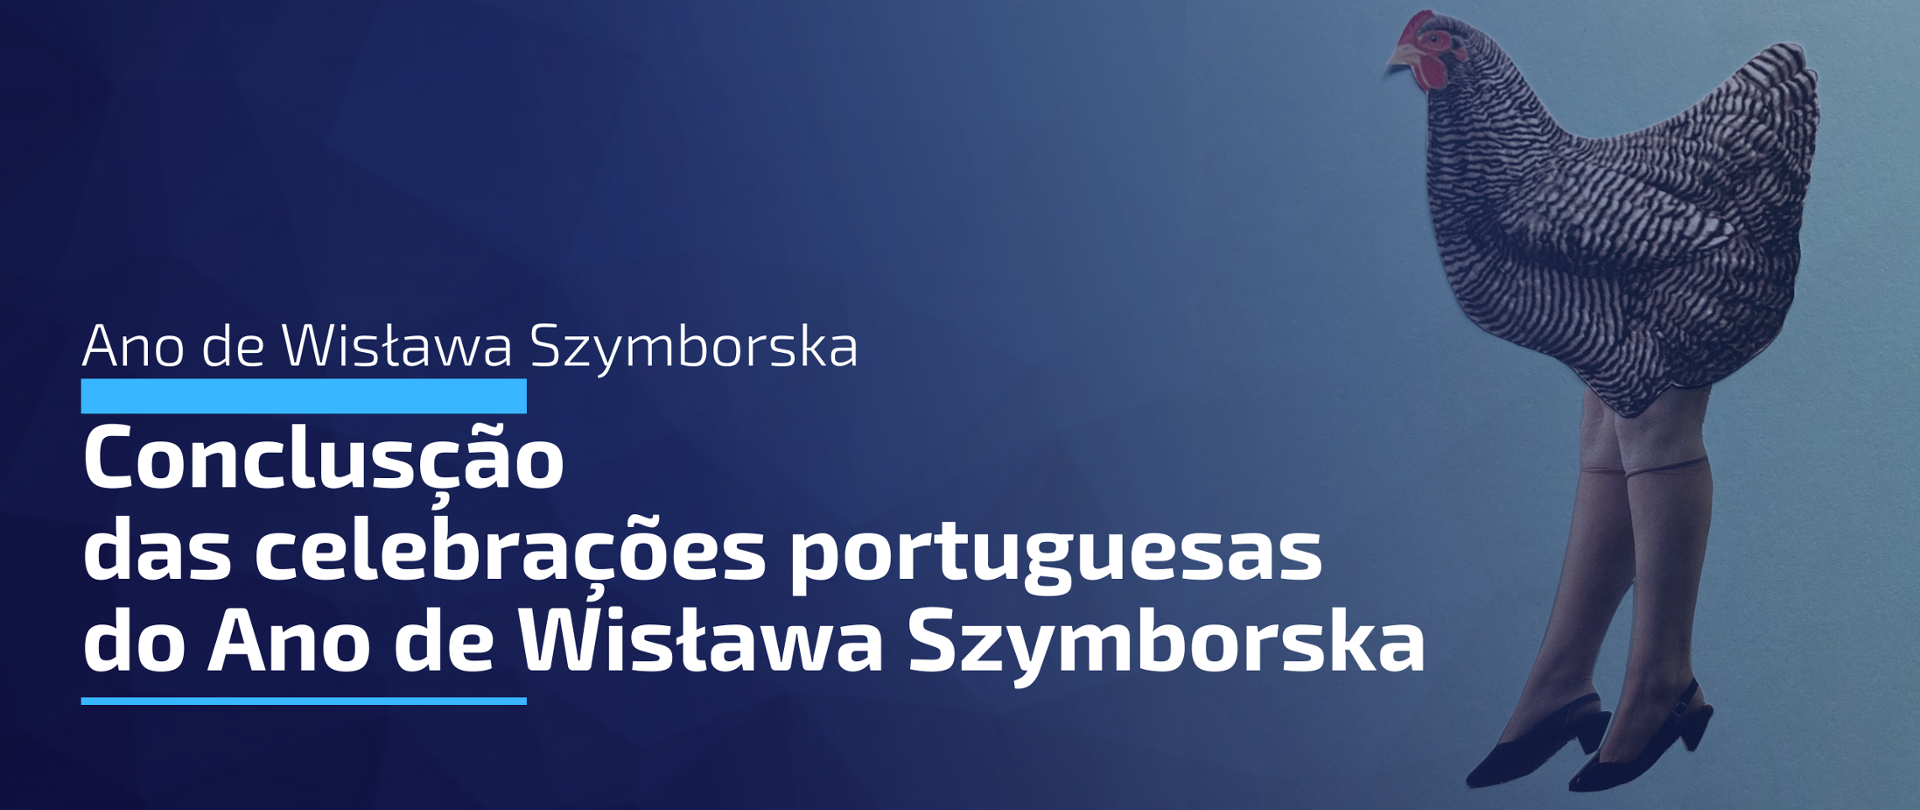 Conclusão das celebrações portuguesas do Ano de Wisława Szymborska